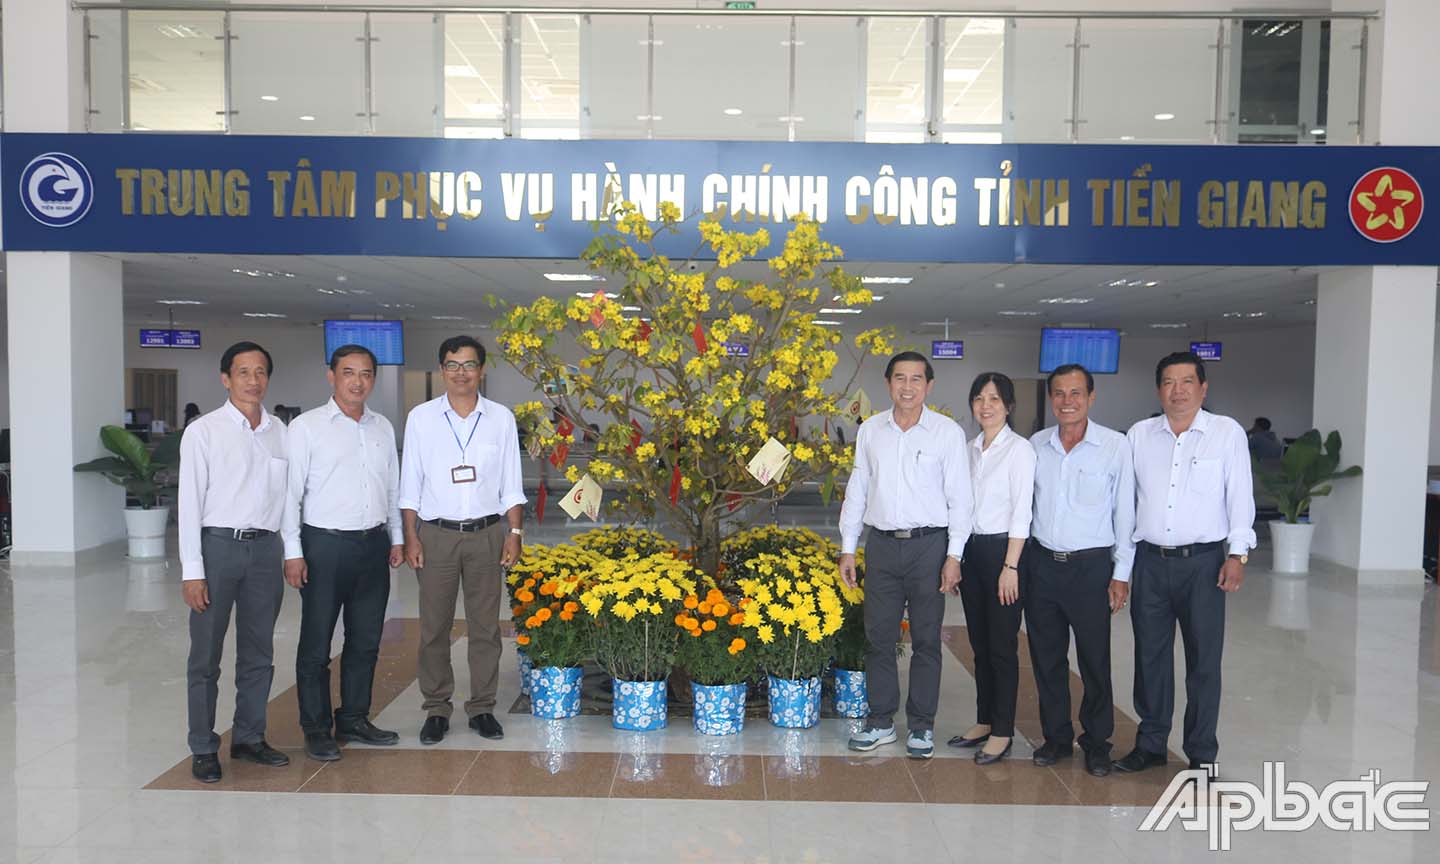 Đồng chí Lê Văn Hưởng chụp ảnh lưu niệm cùng với lãnh đạo, cán bộ, viên chức trung tâm phục vụ hành chính công.